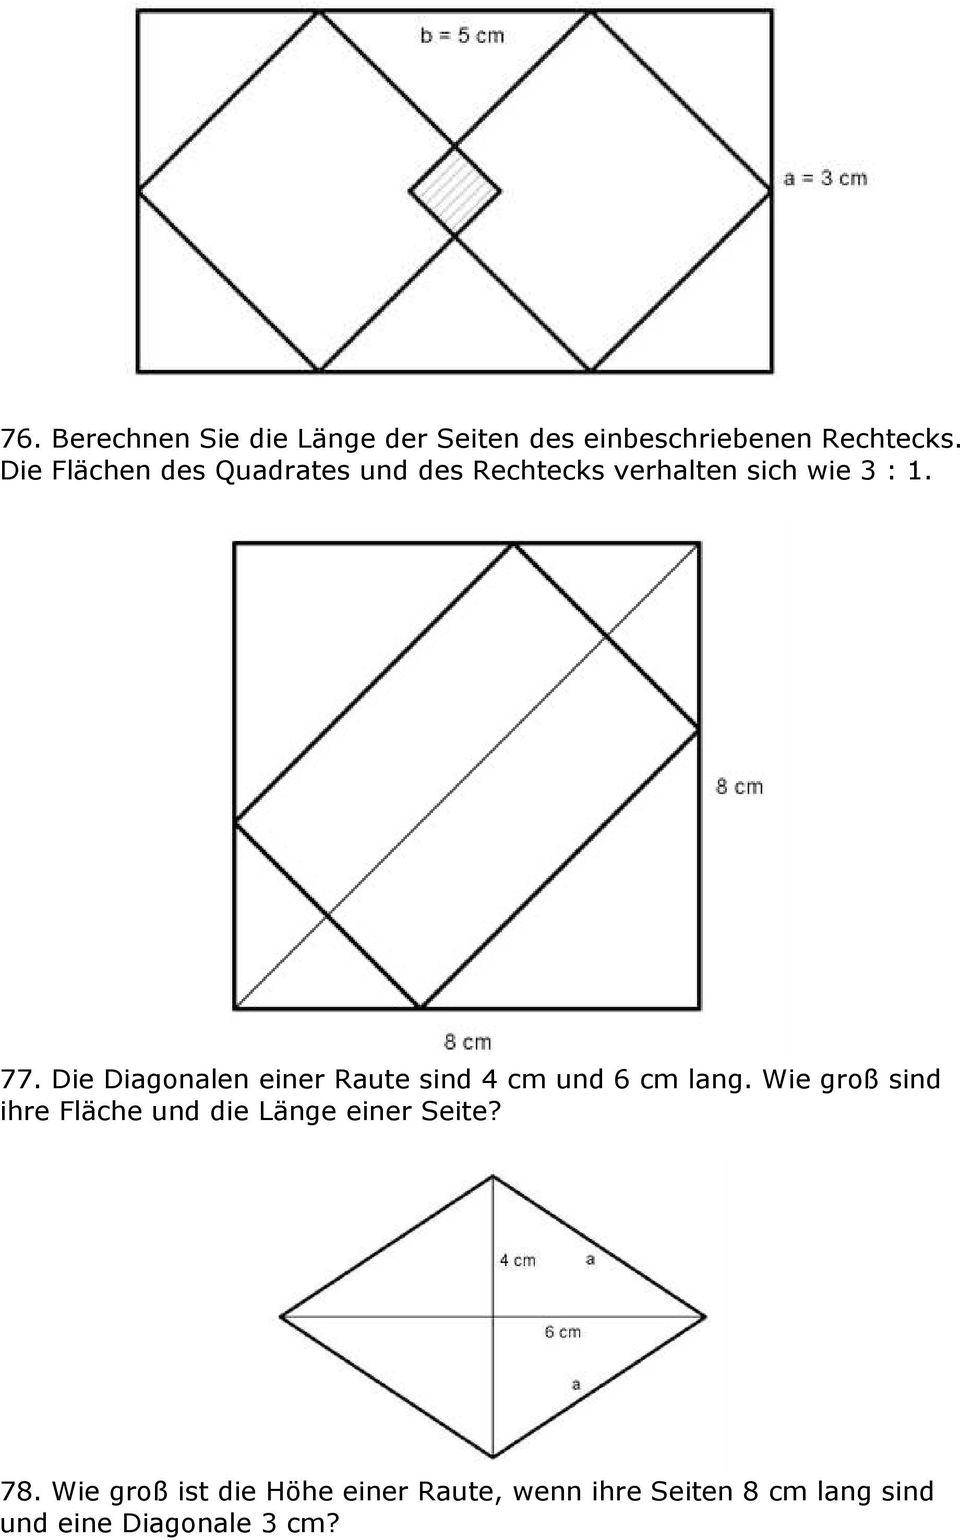 Die Diagonalen einer Raute sind 4 cm und 6 cm lang.